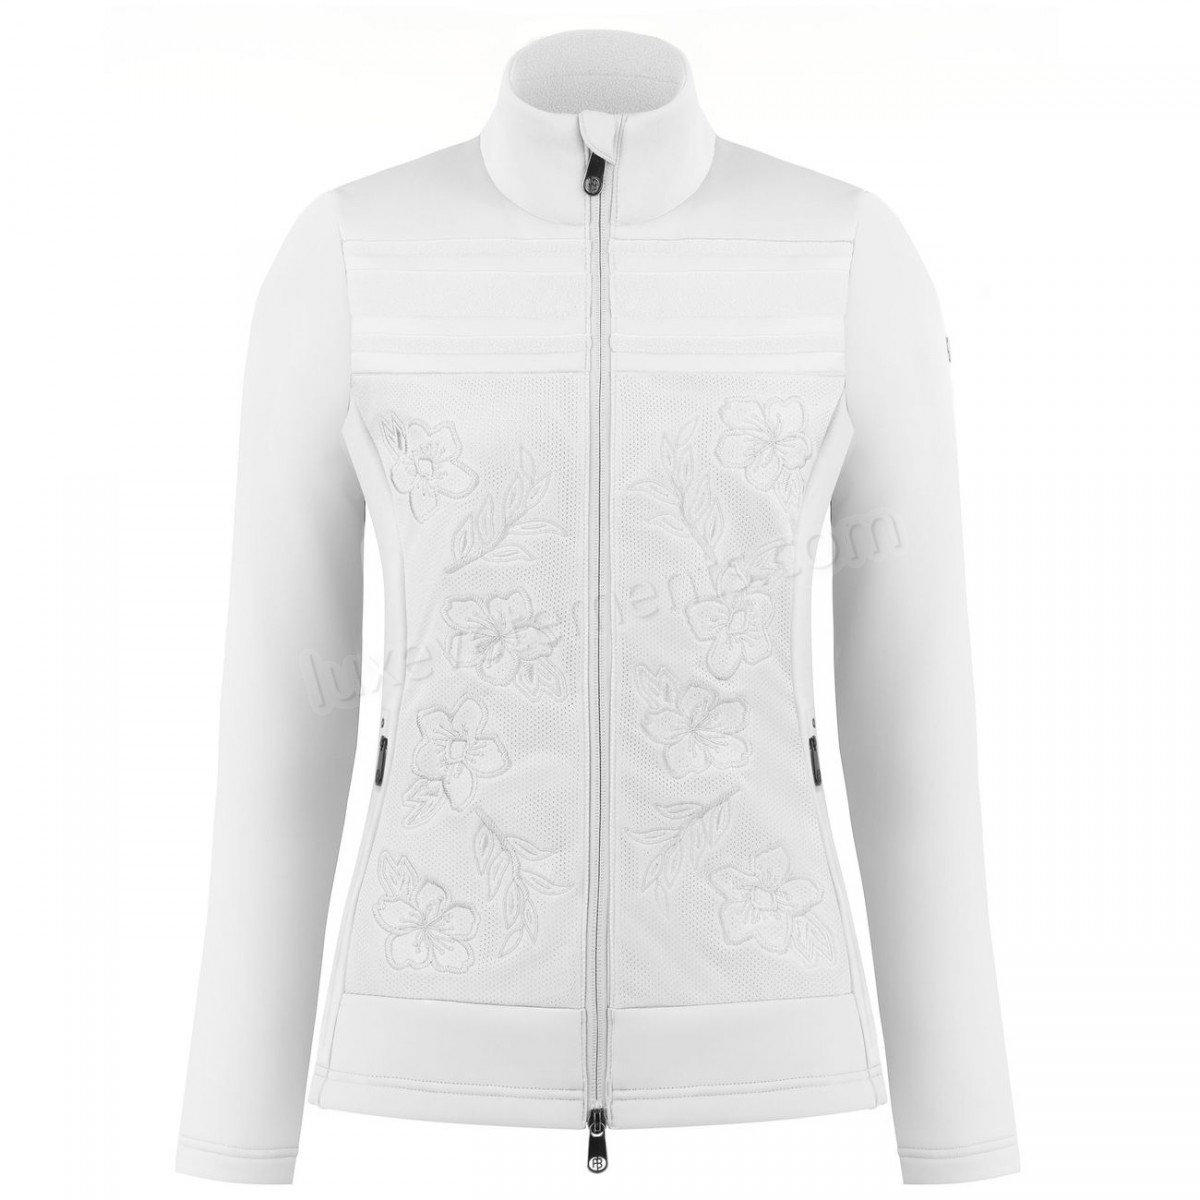 Poivre Blanc-Sports d'hiver femme POIVRE BLANC Veste En Polaire Poivre Blanc Hybrid Stretch Fleece Jacket 1605 White Femme Vente en ligne - -3